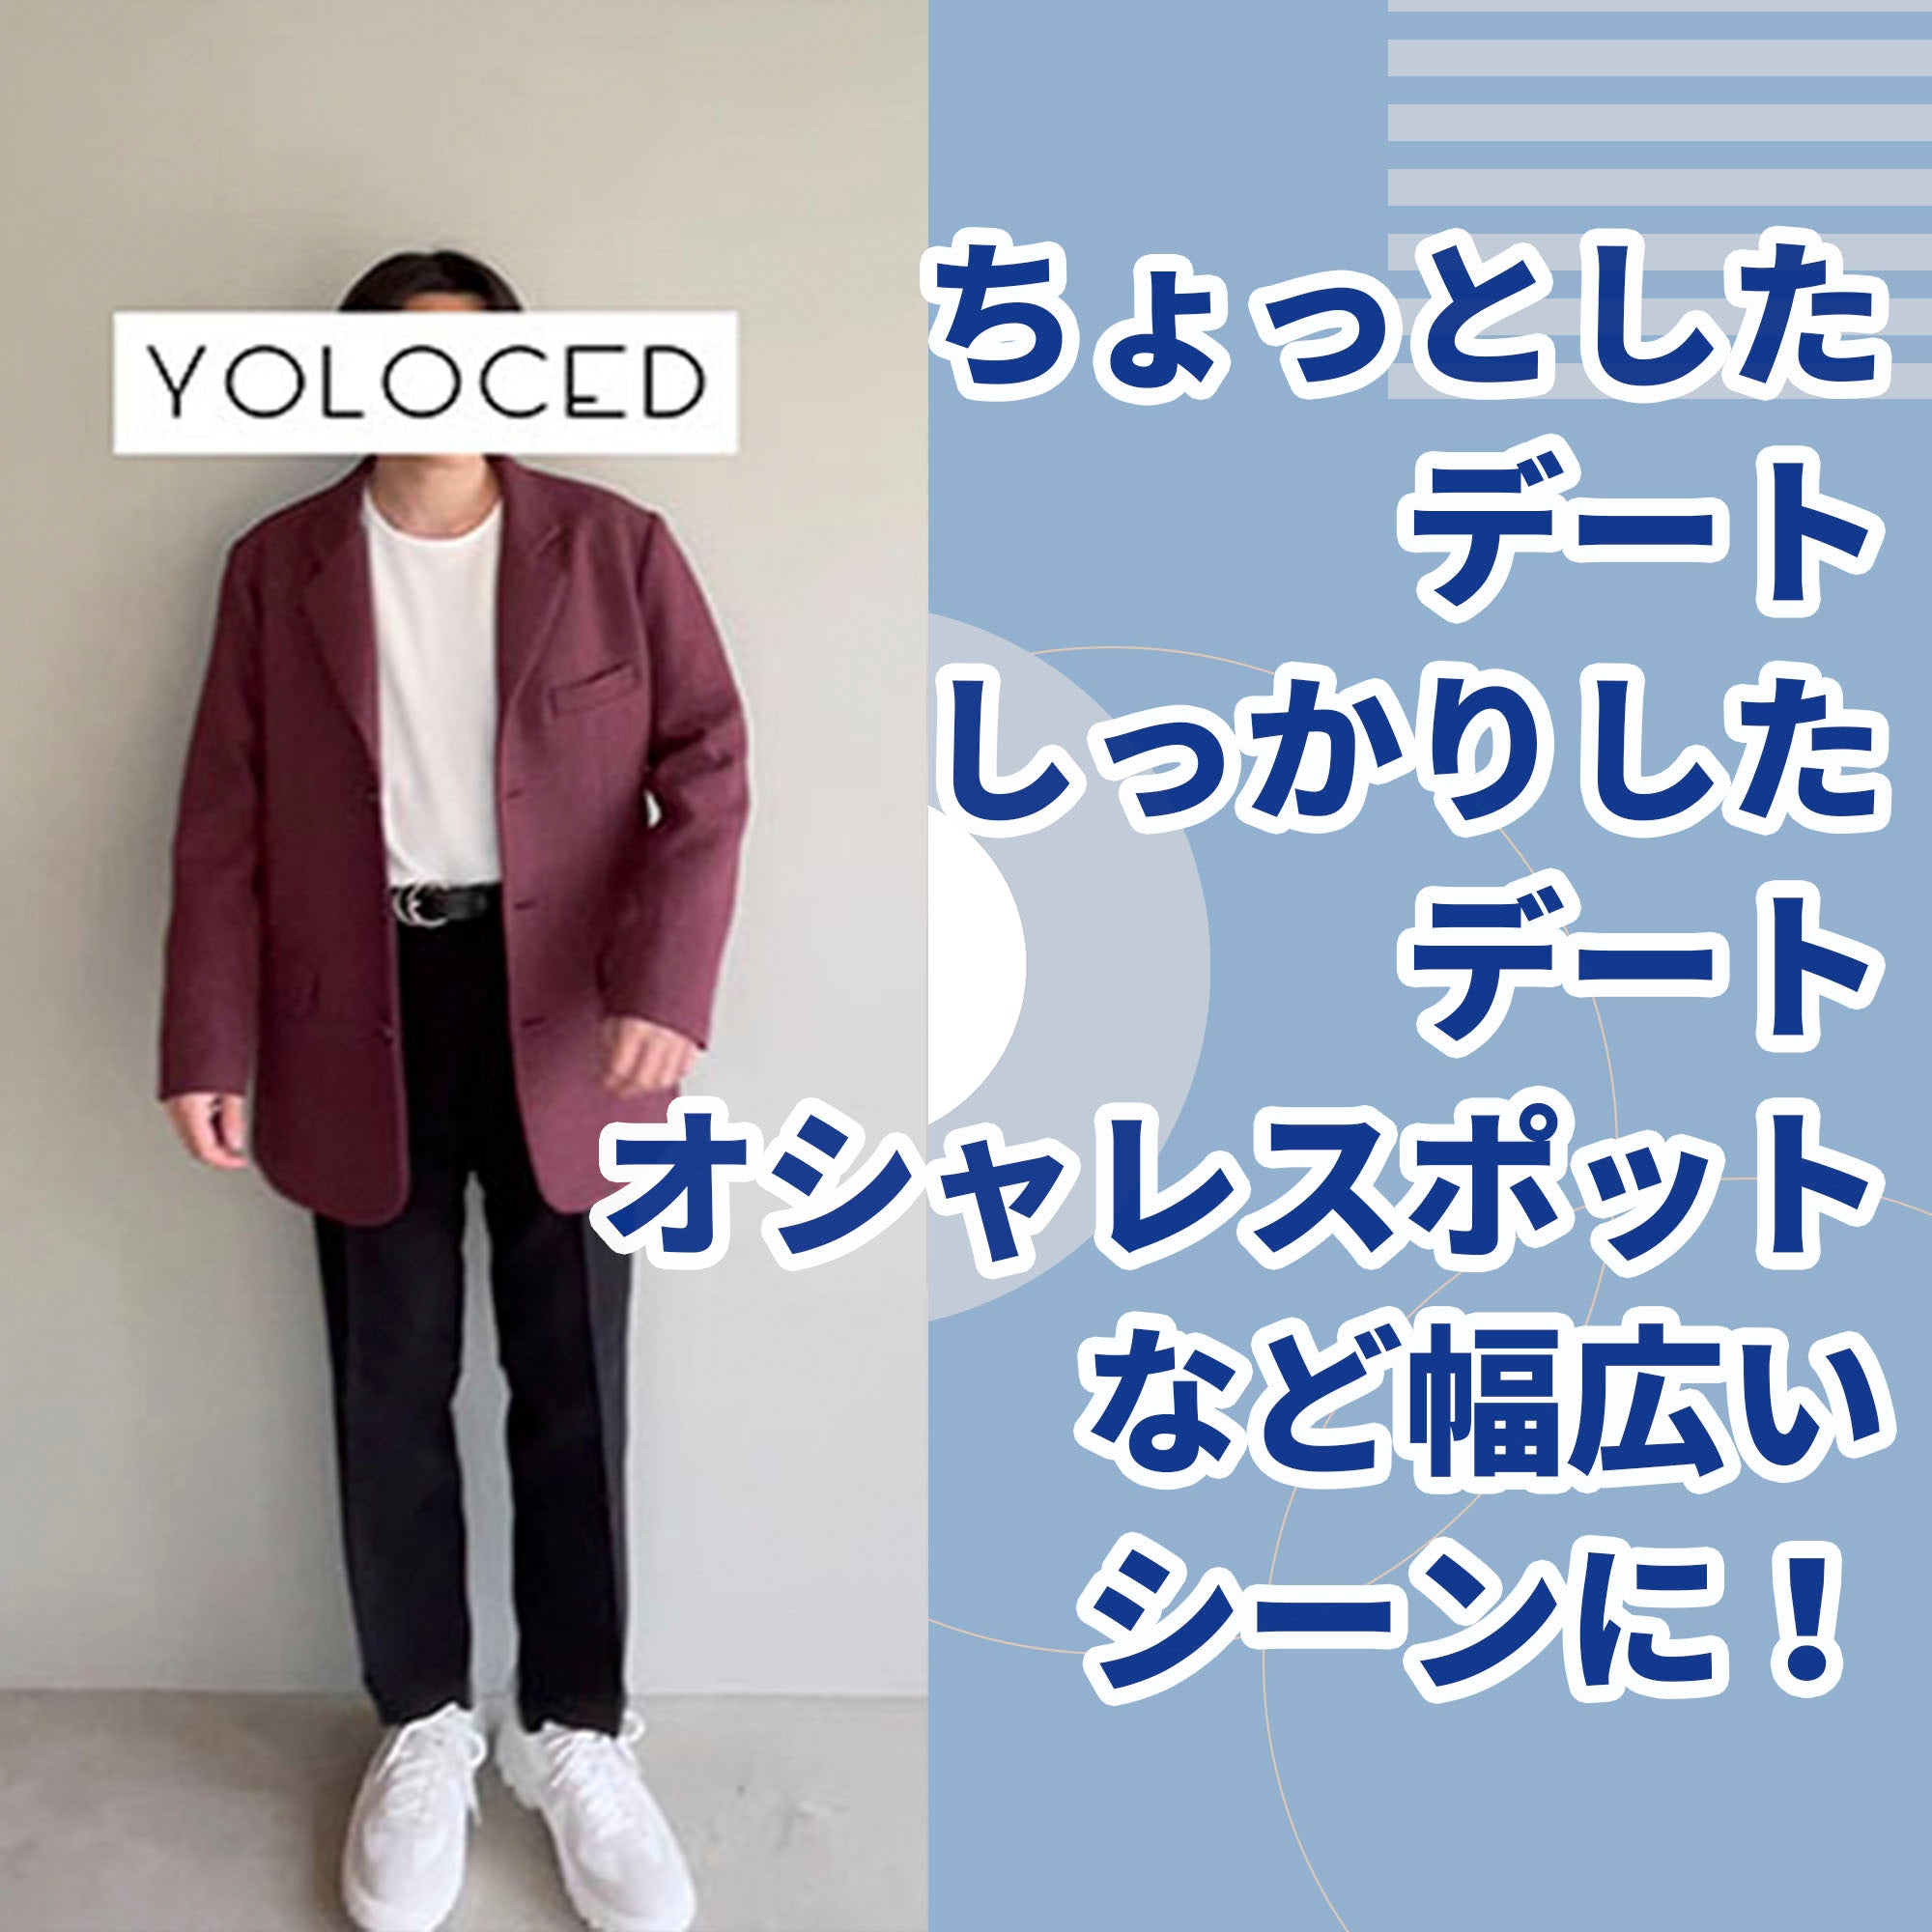 オーバーワインディープジャケット【YOLOCEDブランド商品】